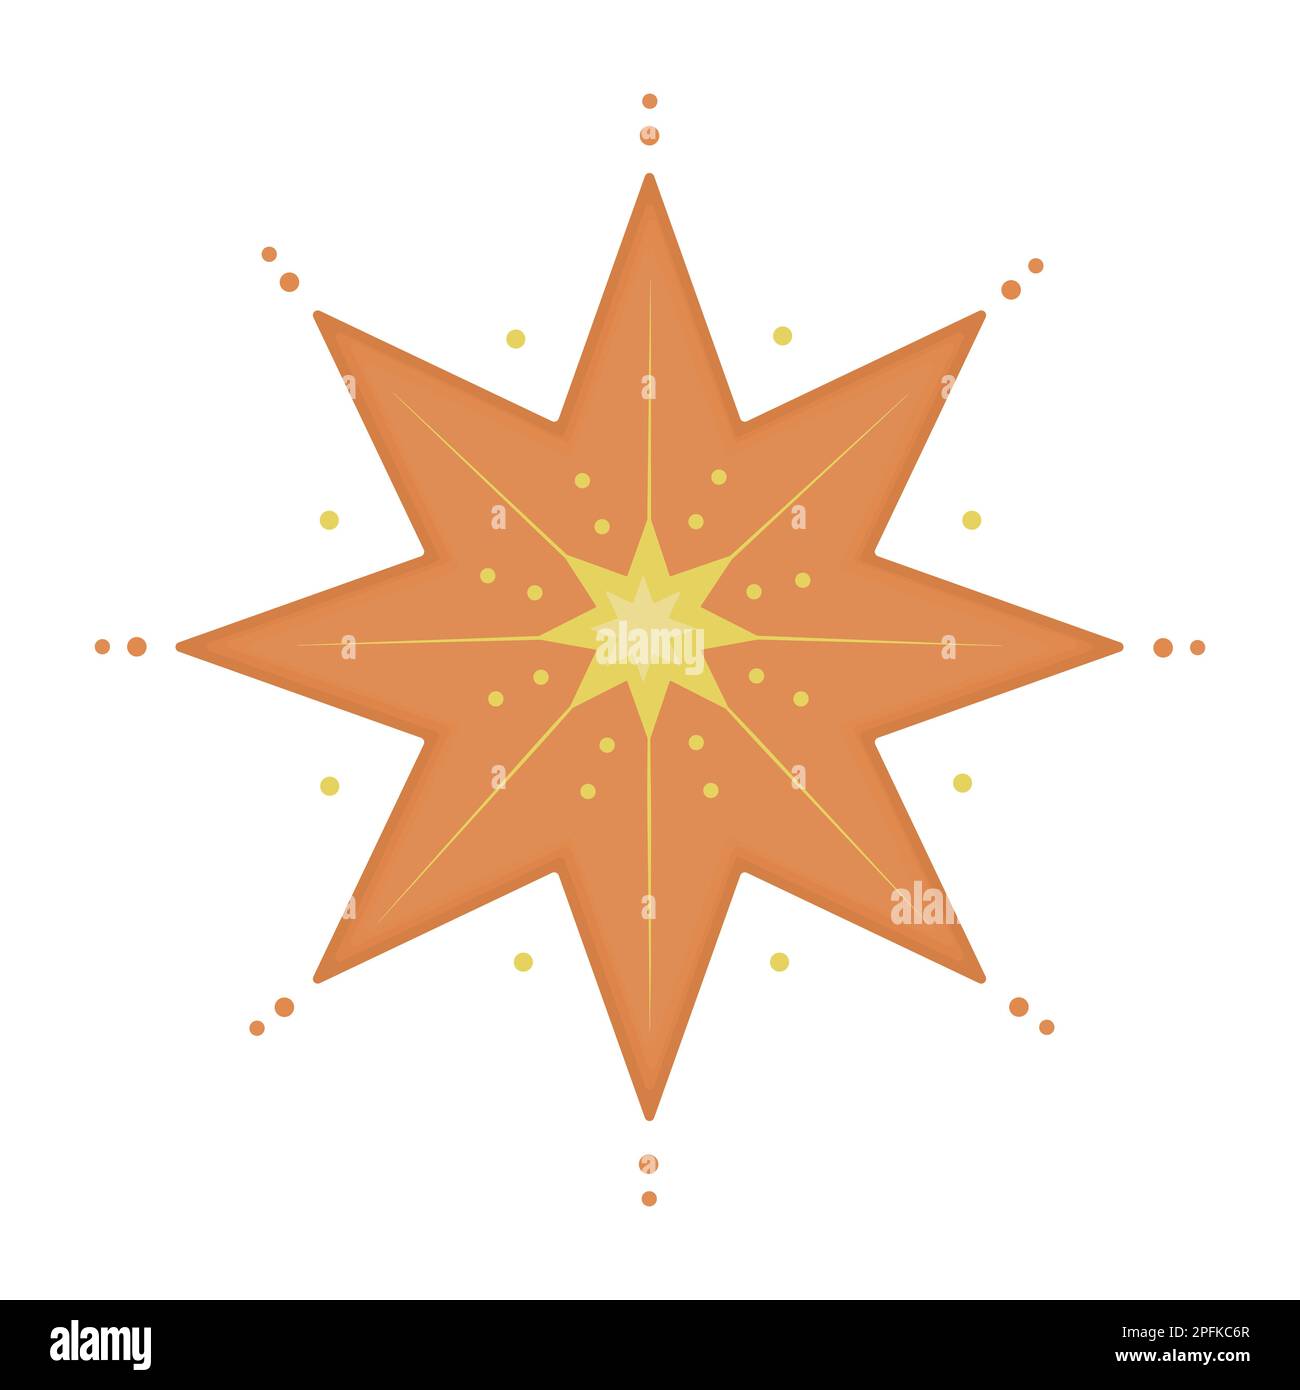 Niedlich dekorierte Sterne, Orange und Gelb Stock Vektor